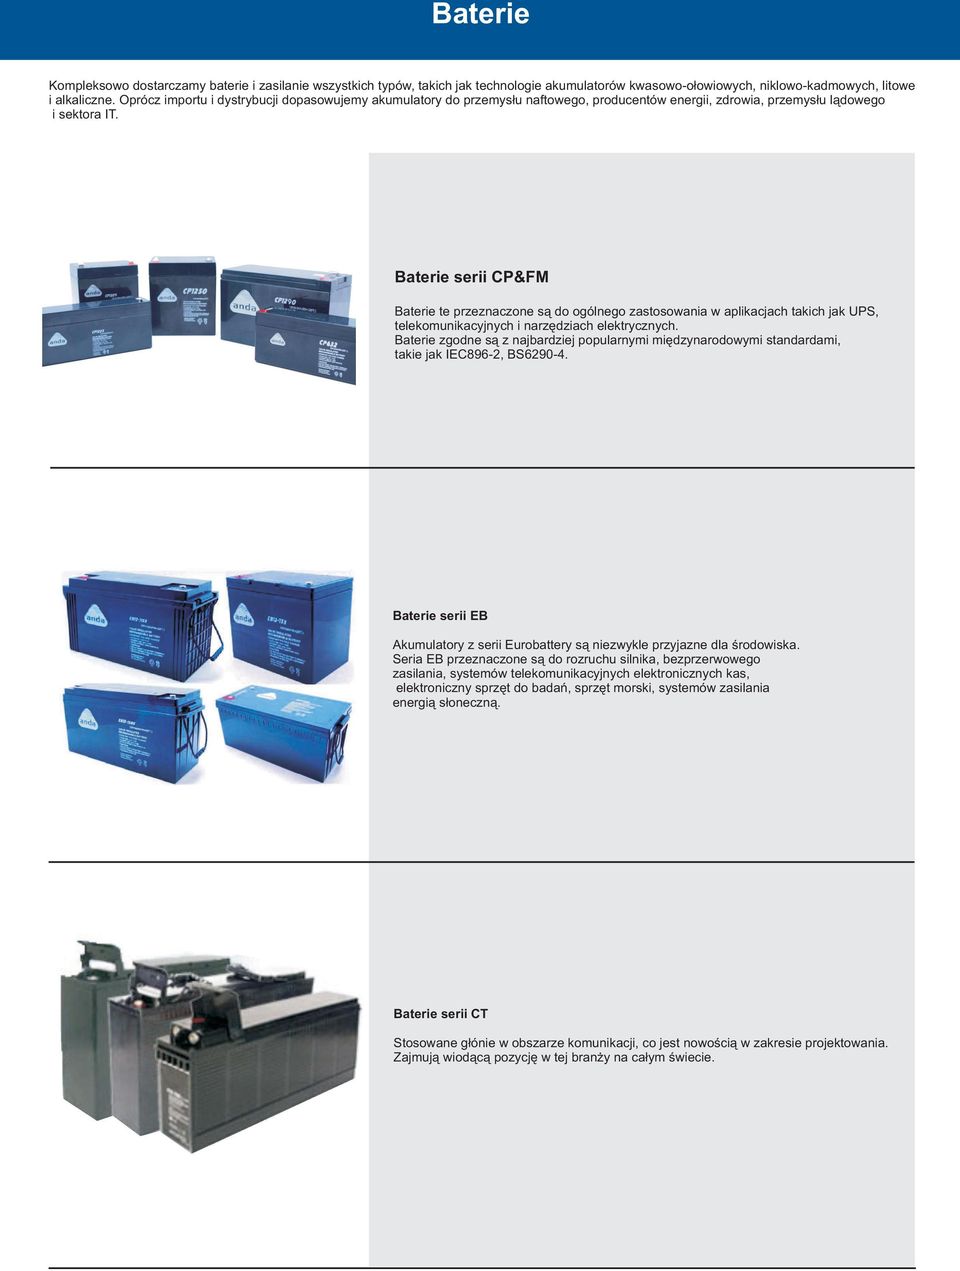 Baterie serii CP&FM Baterie te przeznaczone są do ogólnego zastosowania w aplikacjach takich jak UPS, telekomunikacyjnych i narzędziach elektrycznych.